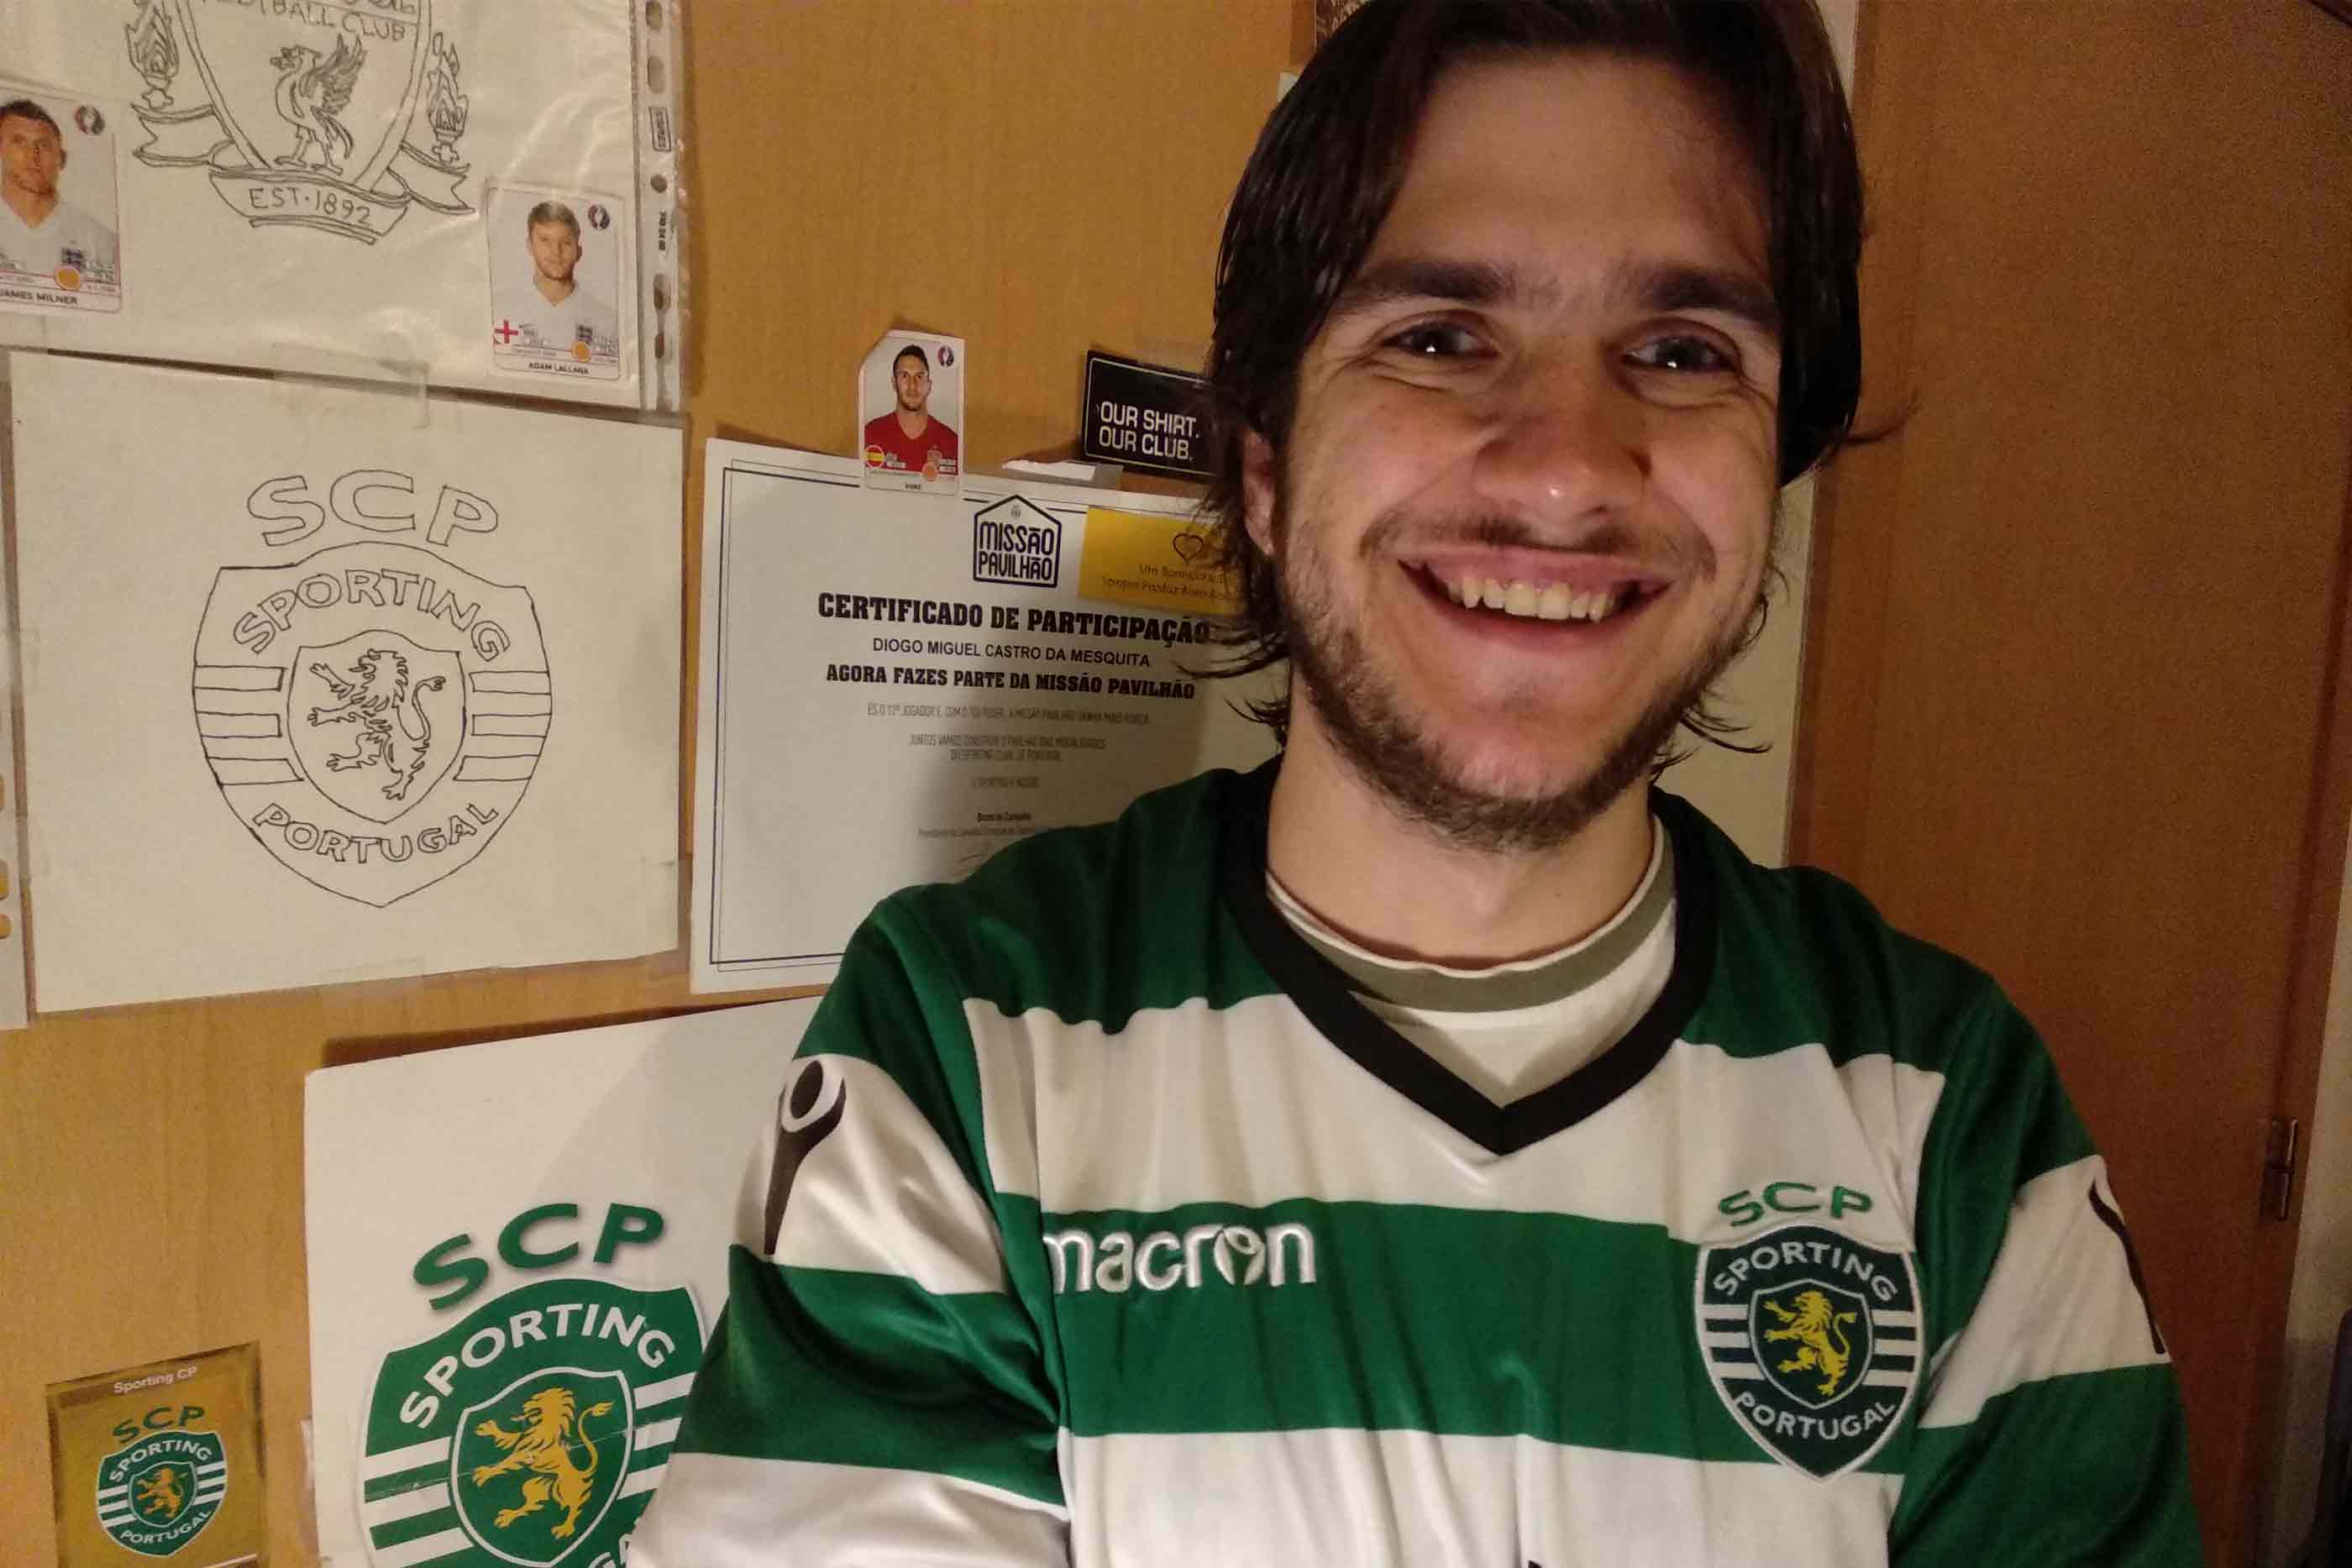 Filipe Mesquita, sportinguista e assinante da Sport TV, junto à porta do seu roupeiro decorado com inúmeras lembranças de futebol